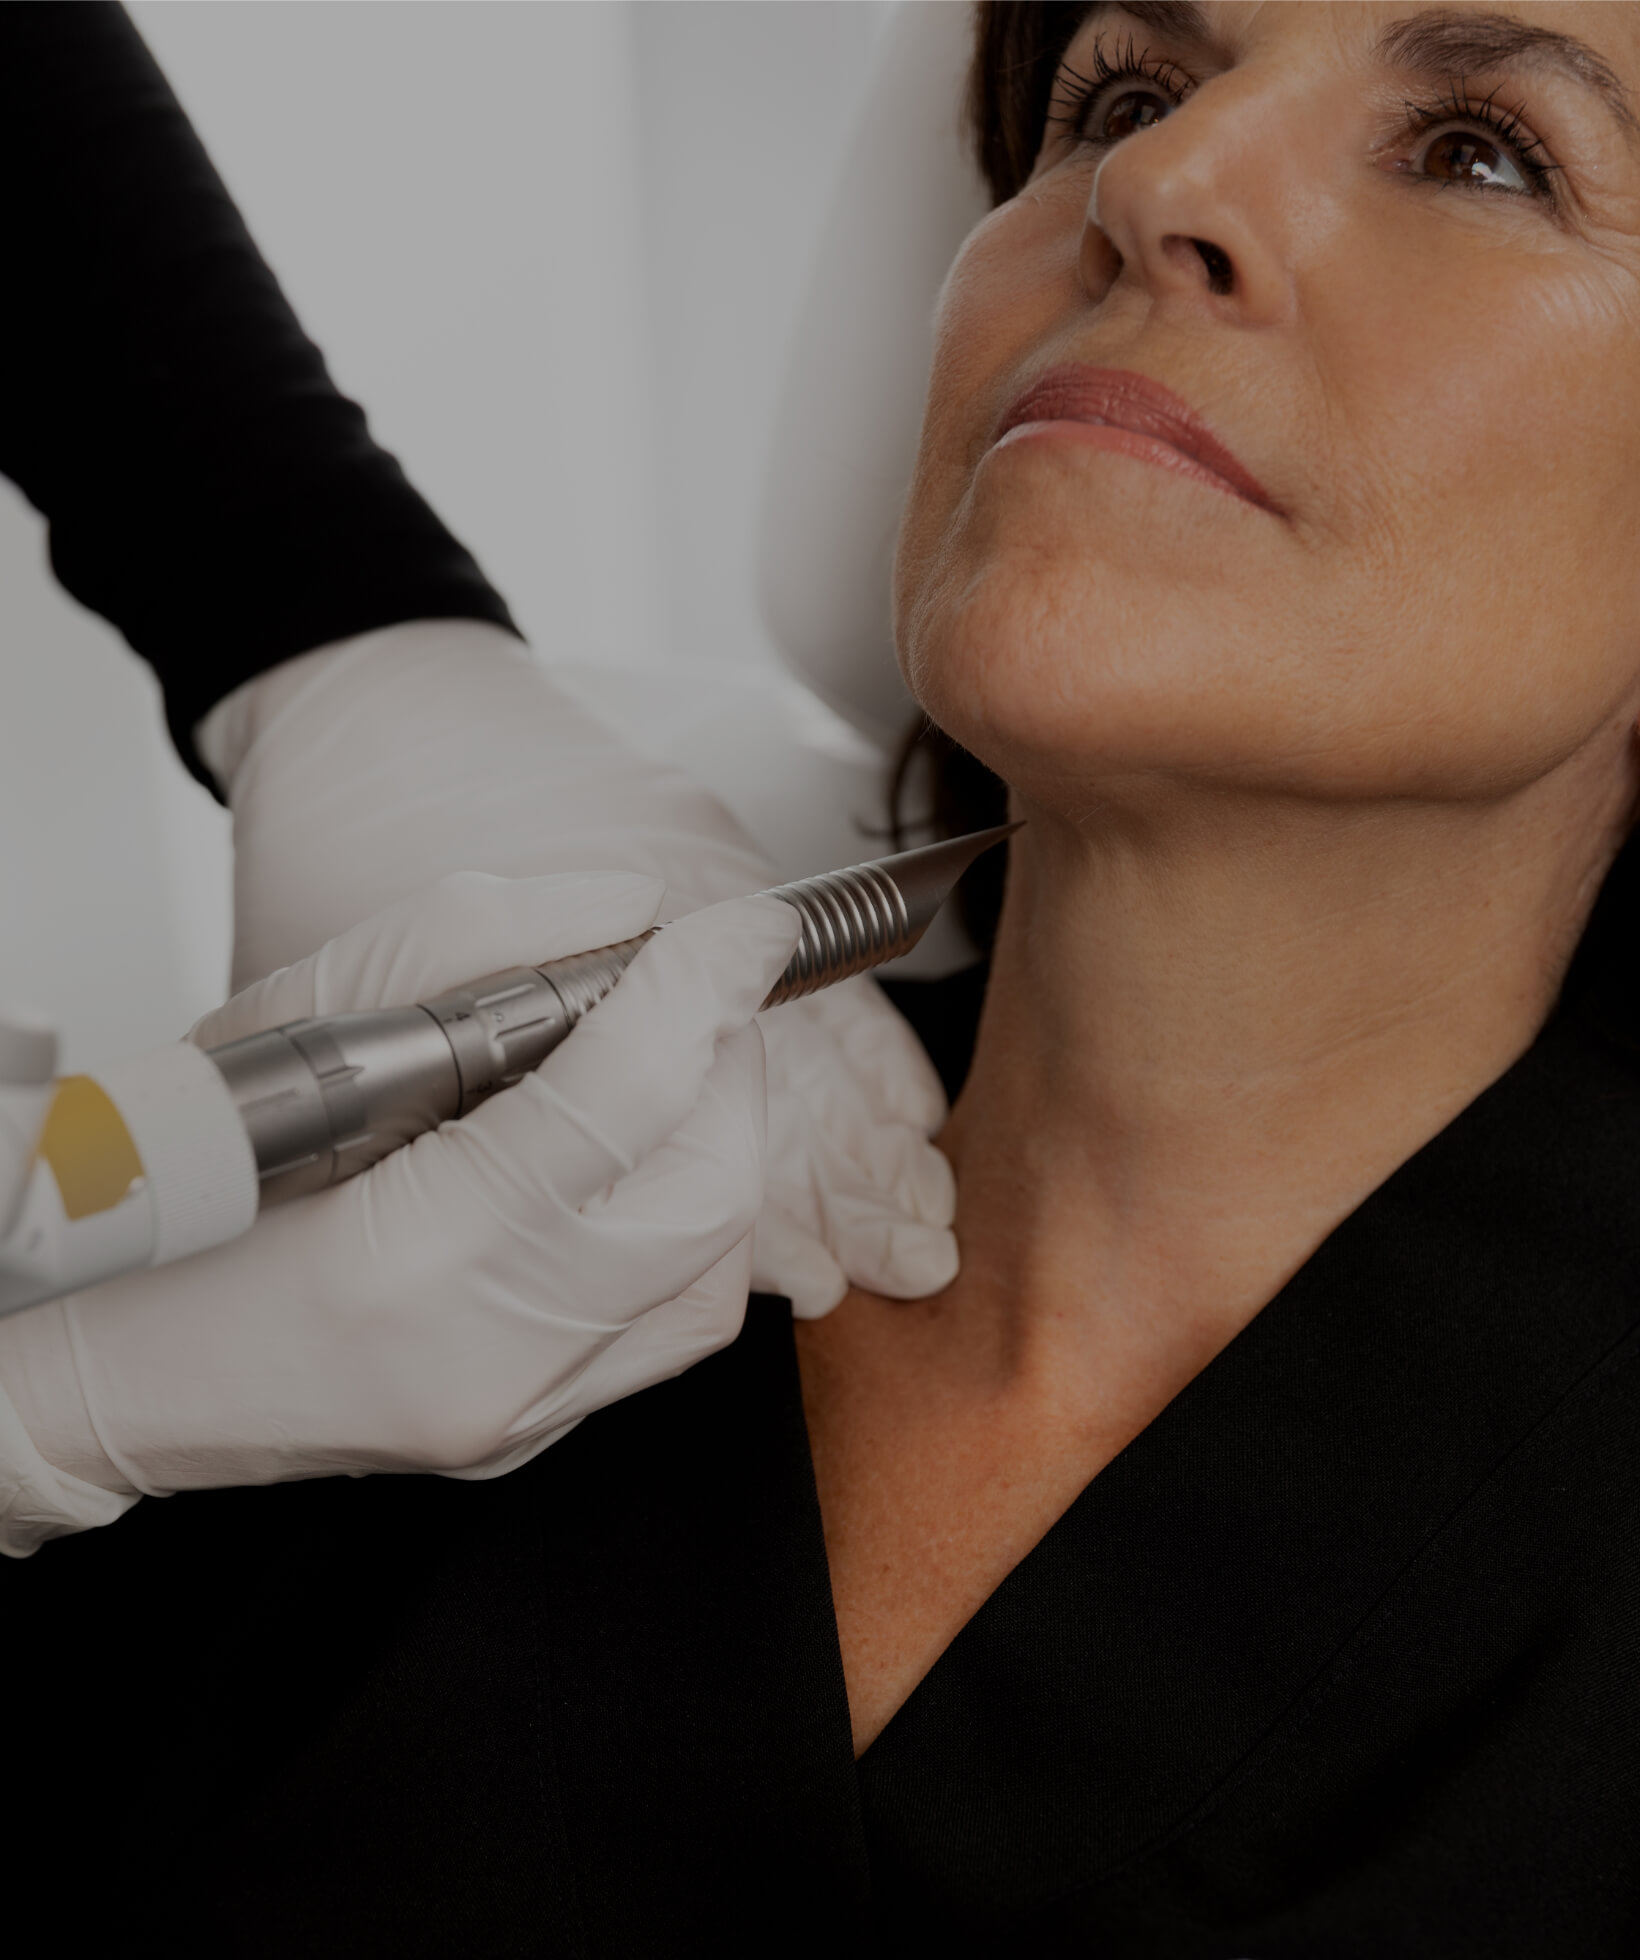 Une technicienne médico-esthétique de la Clinique Chloé traitant le cou d'une patiente avec le laser TightSculpting